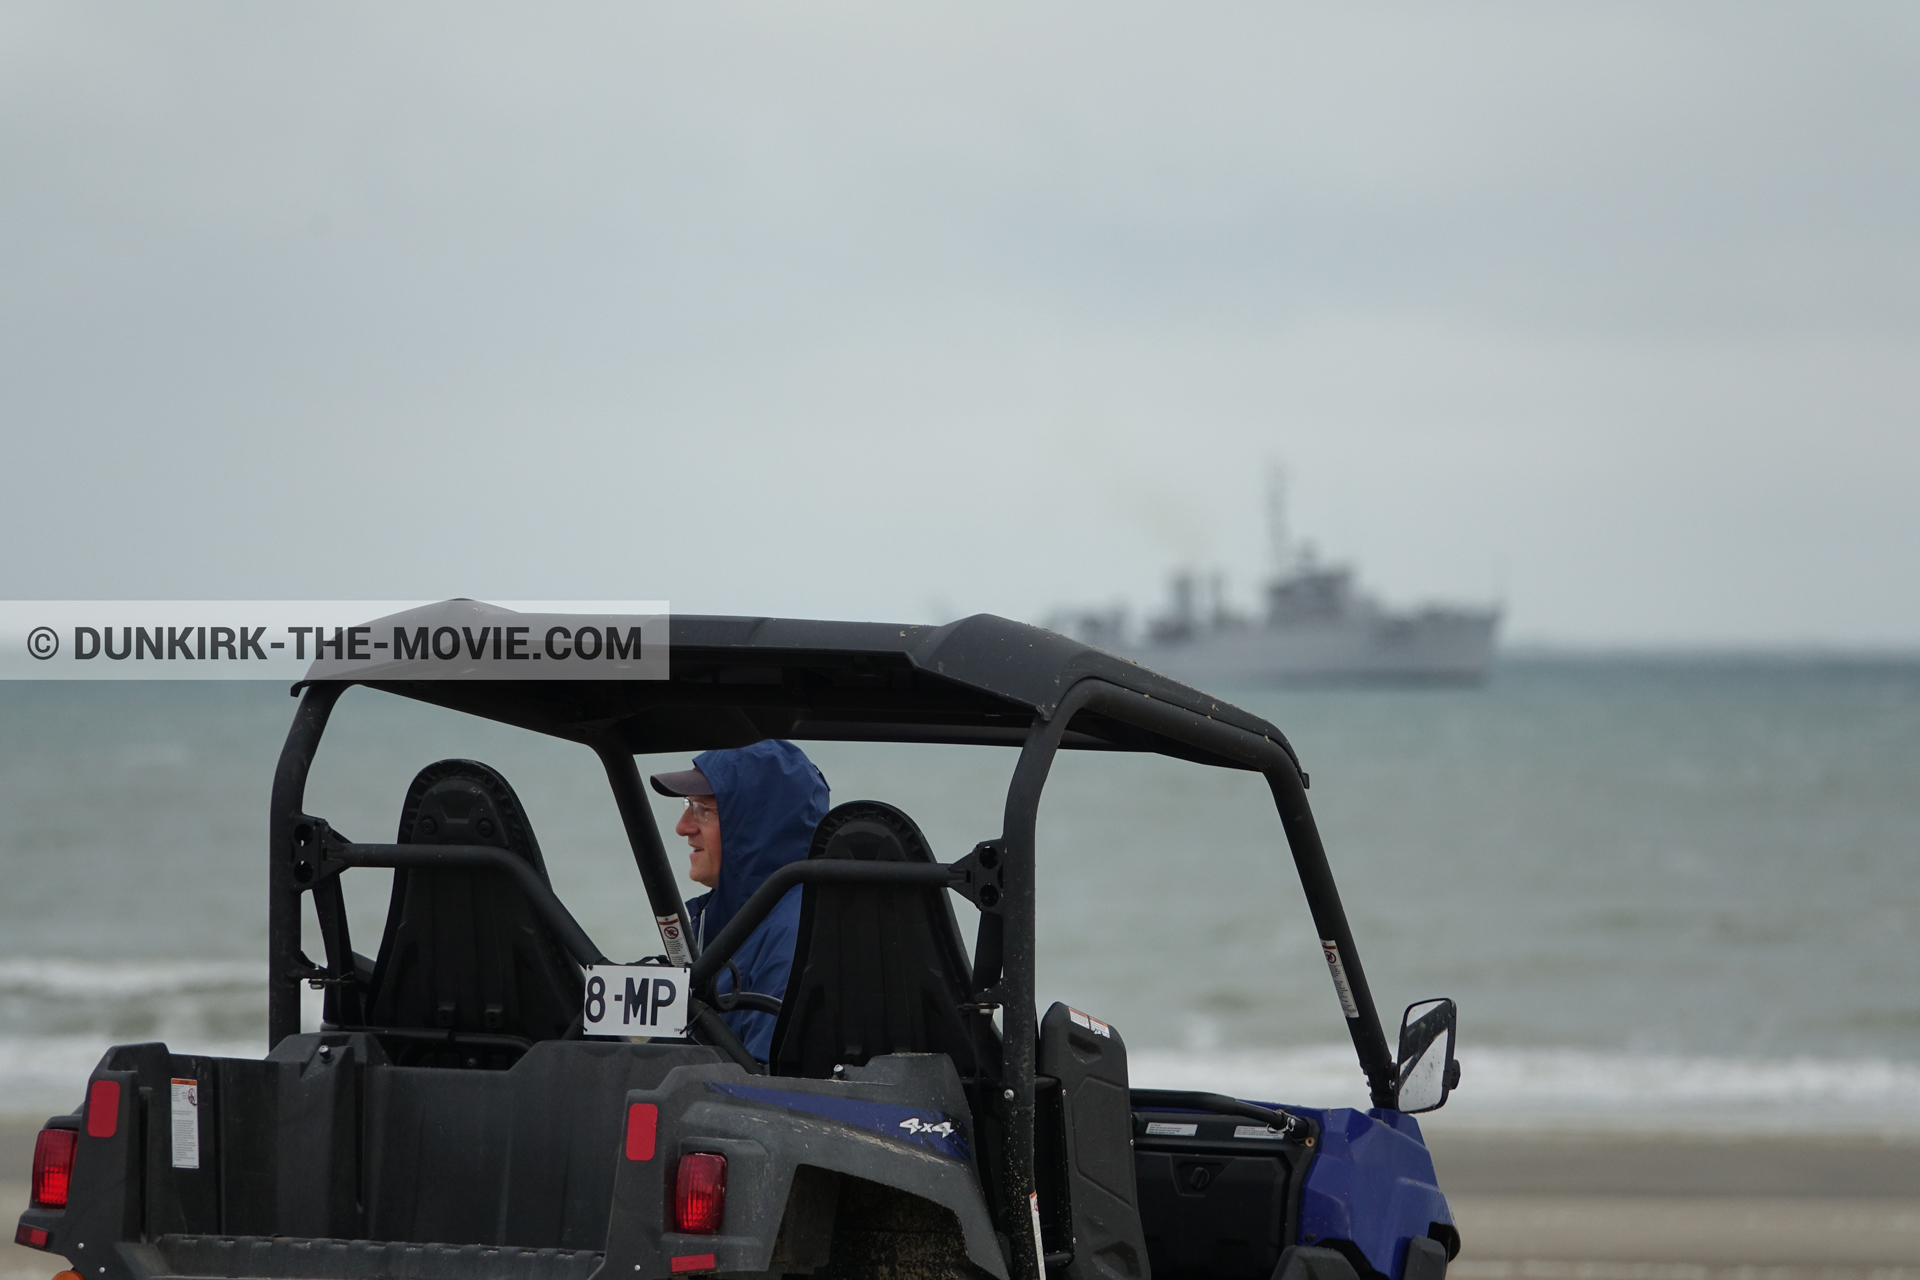 Fotos con barco, playa, equipo técnica,  durante el rodaje de la película Dunkerque de Nolan